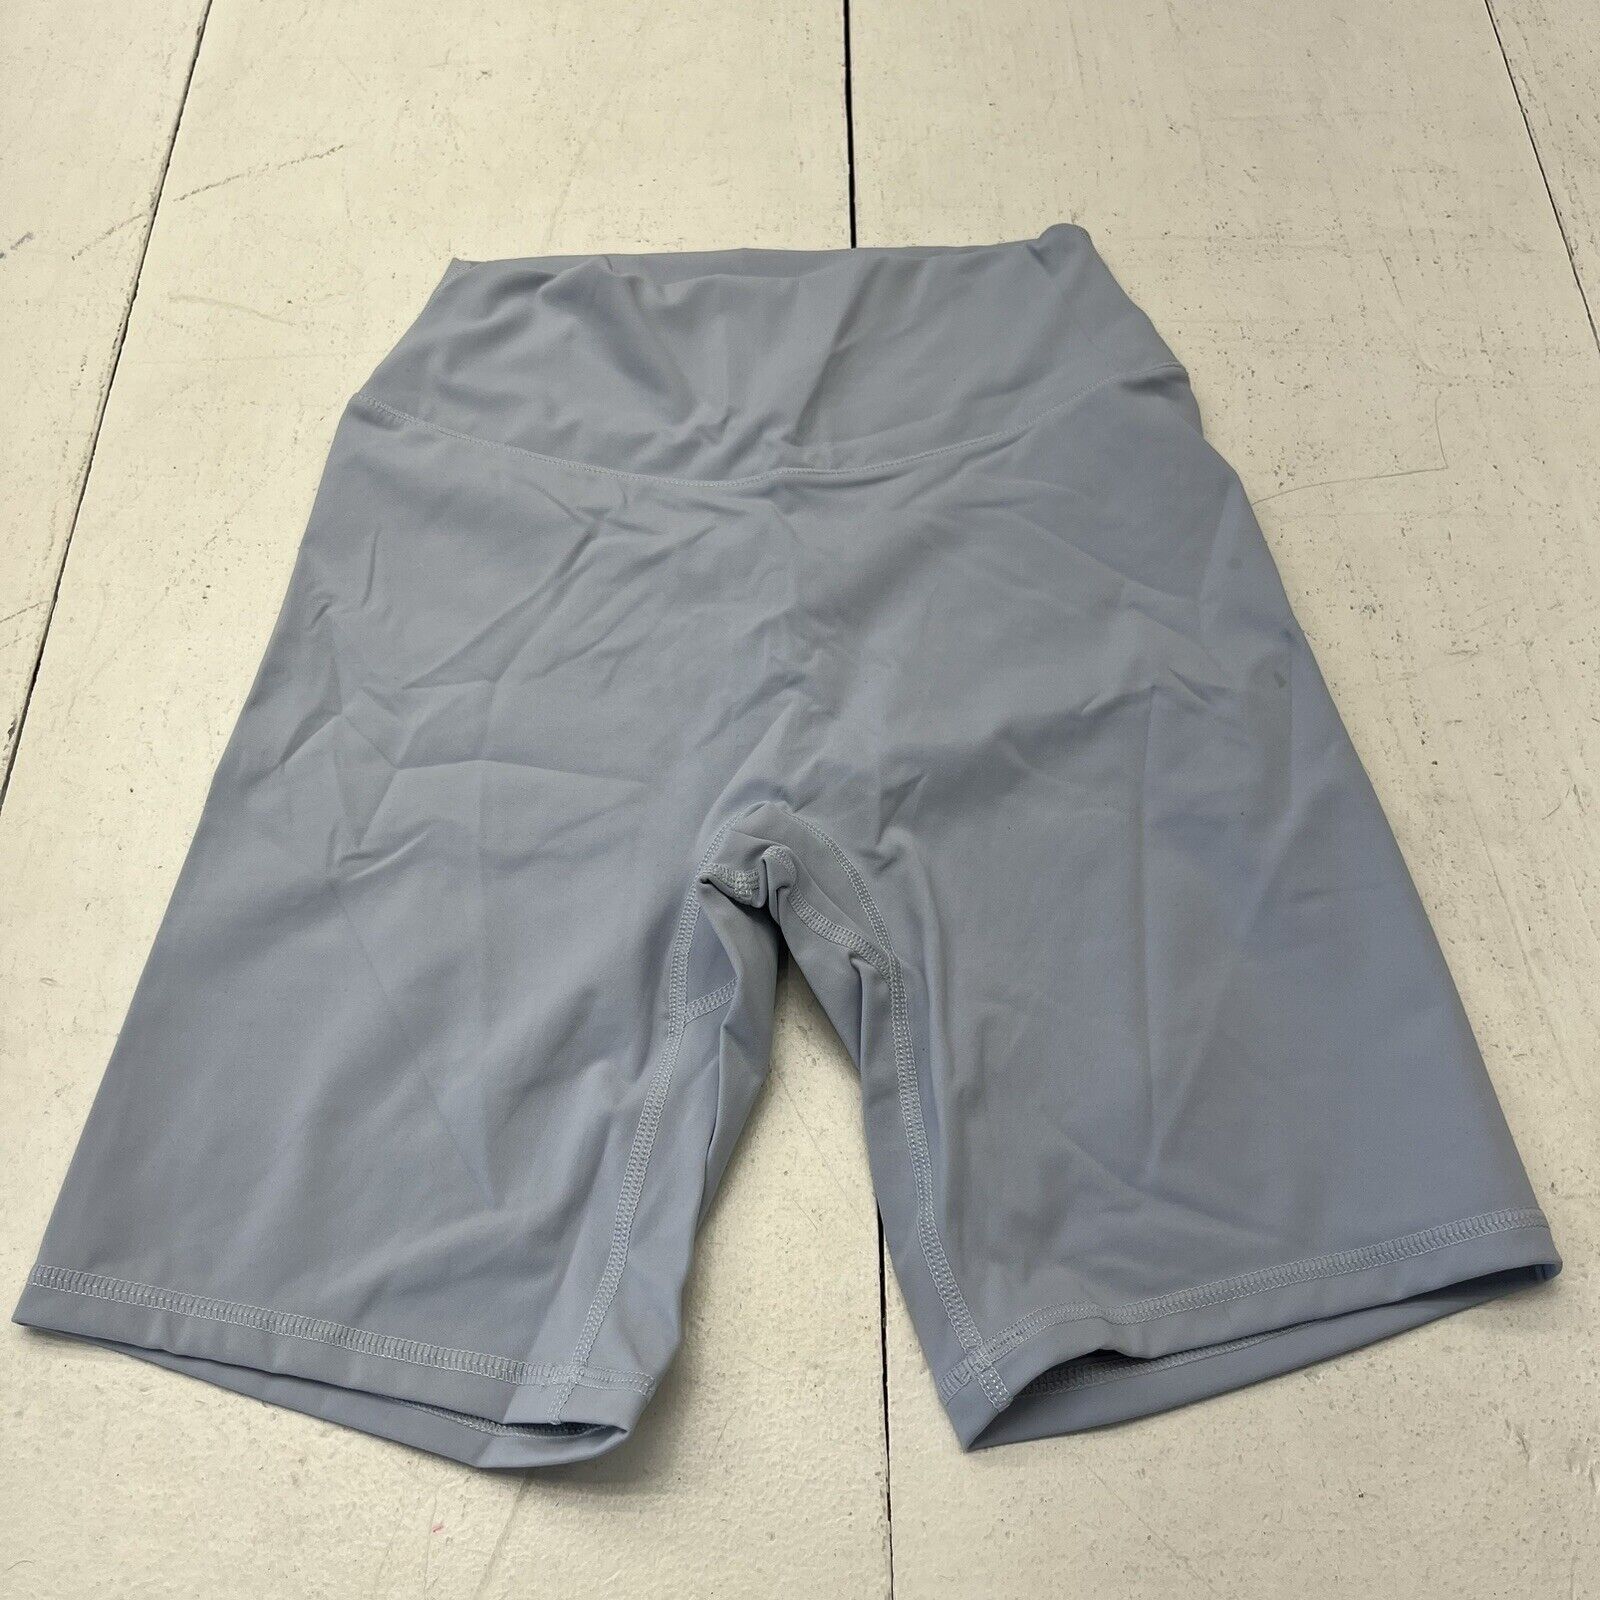 Sunzel Light Blue 8” Biker Shorts Women's Size Small NEW - beyond exchange